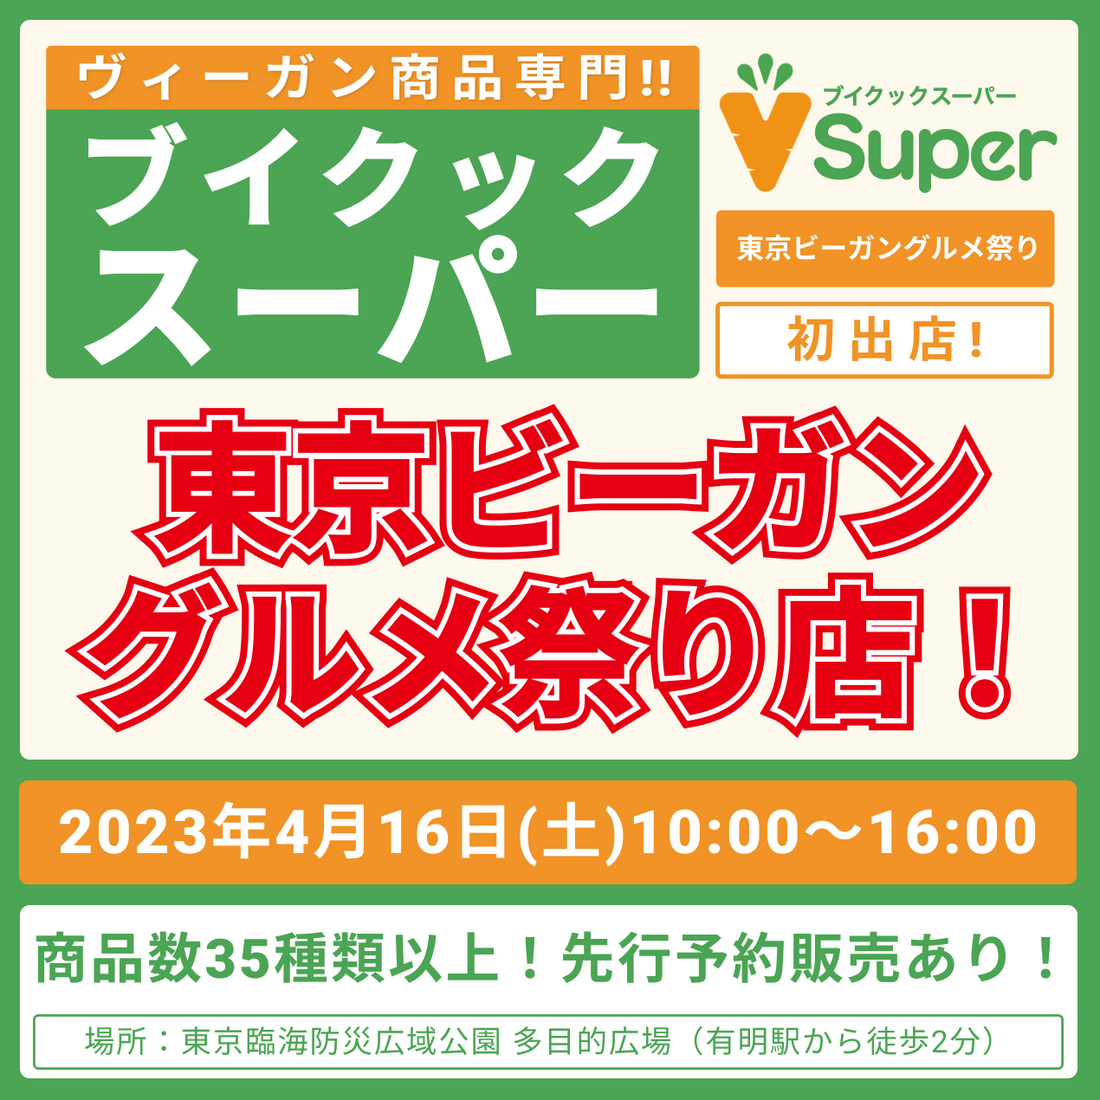 ブイクックスーパーが「東京ビーガングルメ祭り春 2023」に出店します！